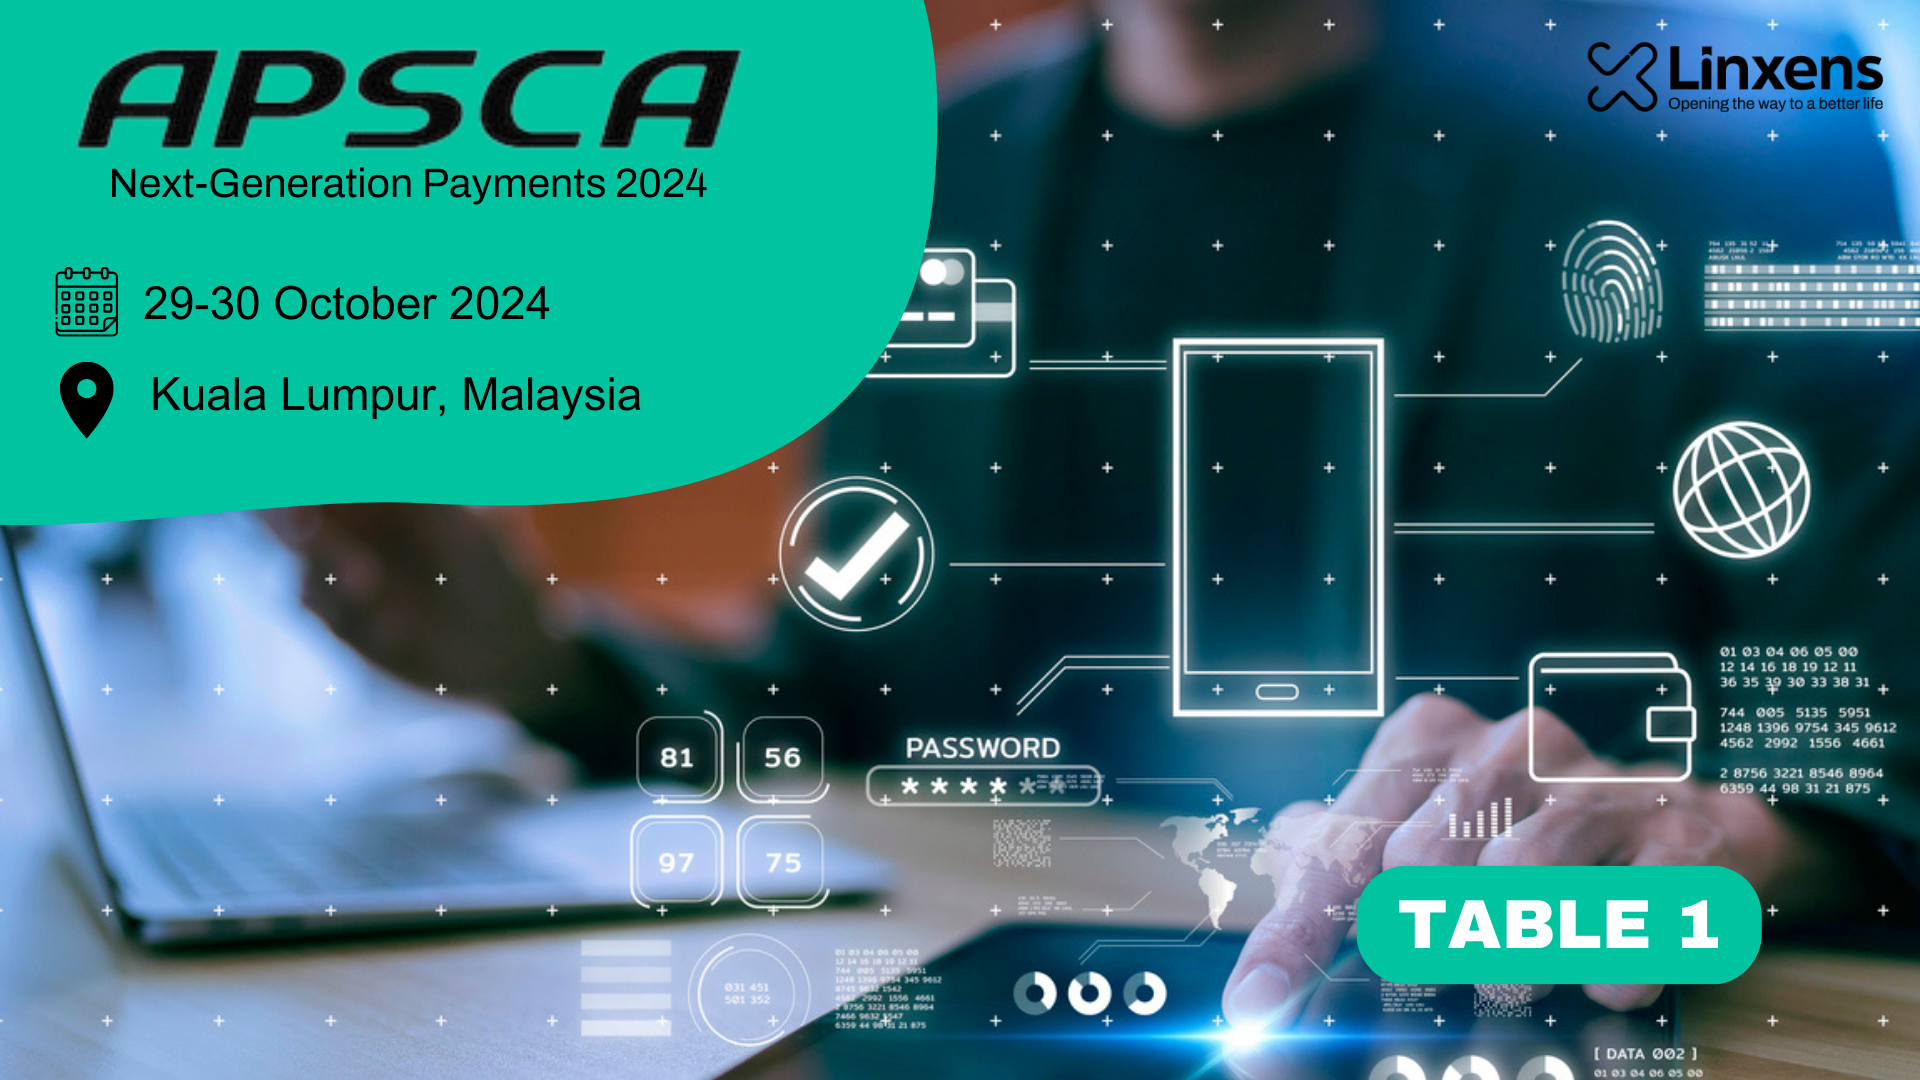 APSCA Next-Generation Payments 2024